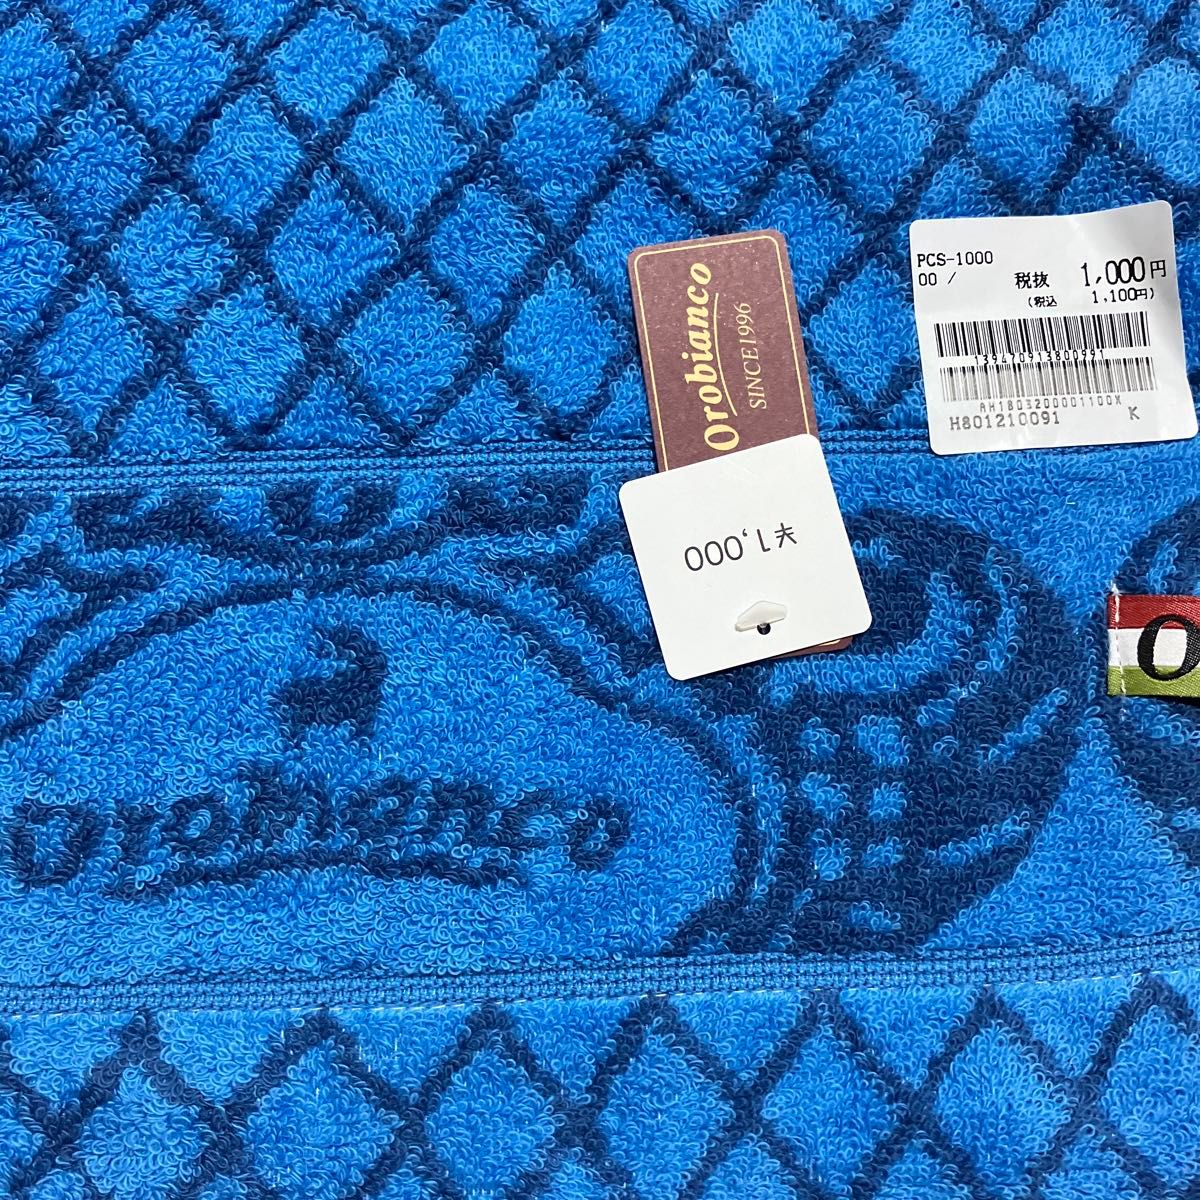 未使用オロビアンコ製ブルー系フェスタオル35x75税込み1100円まったく新品のOrobianco製ブルータオルが登場です。